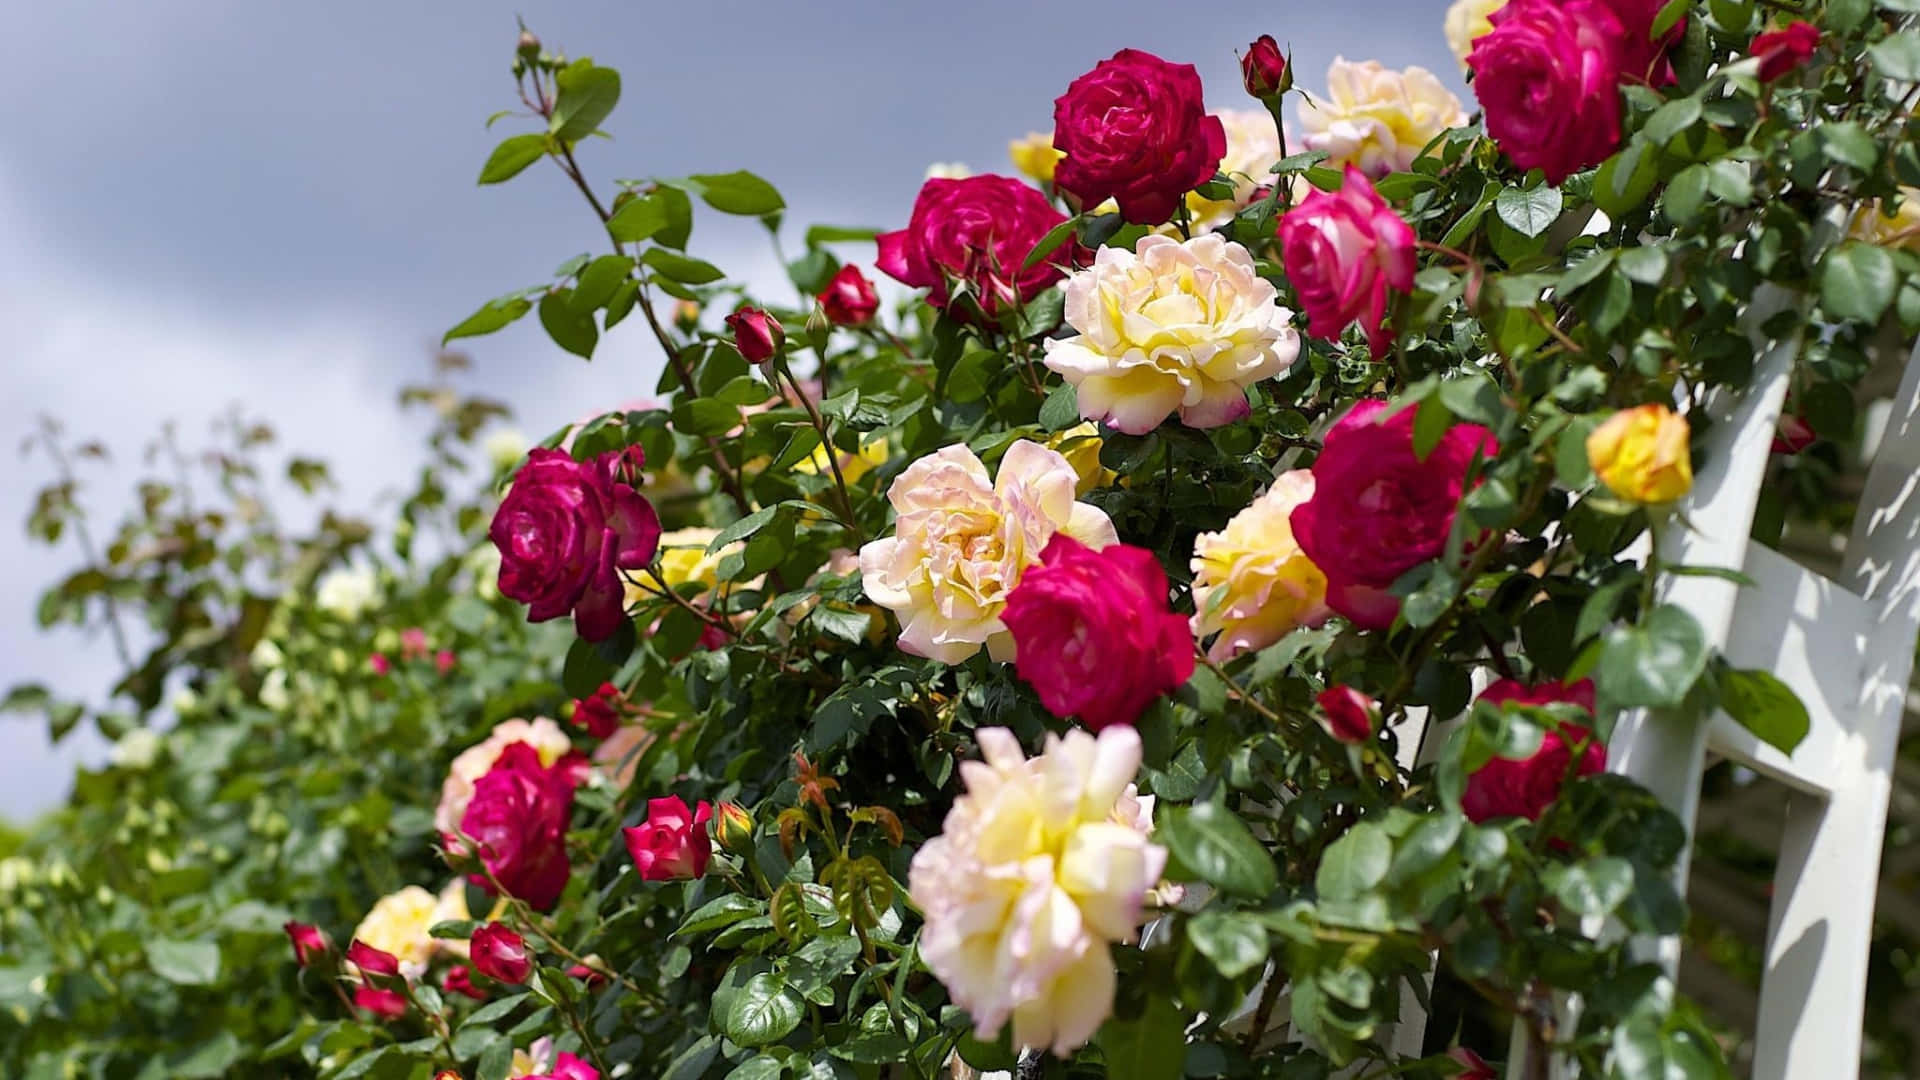 Imagende Rosas Del Jardín, Rosas Rosadas Y Blancas En Un Arbusto